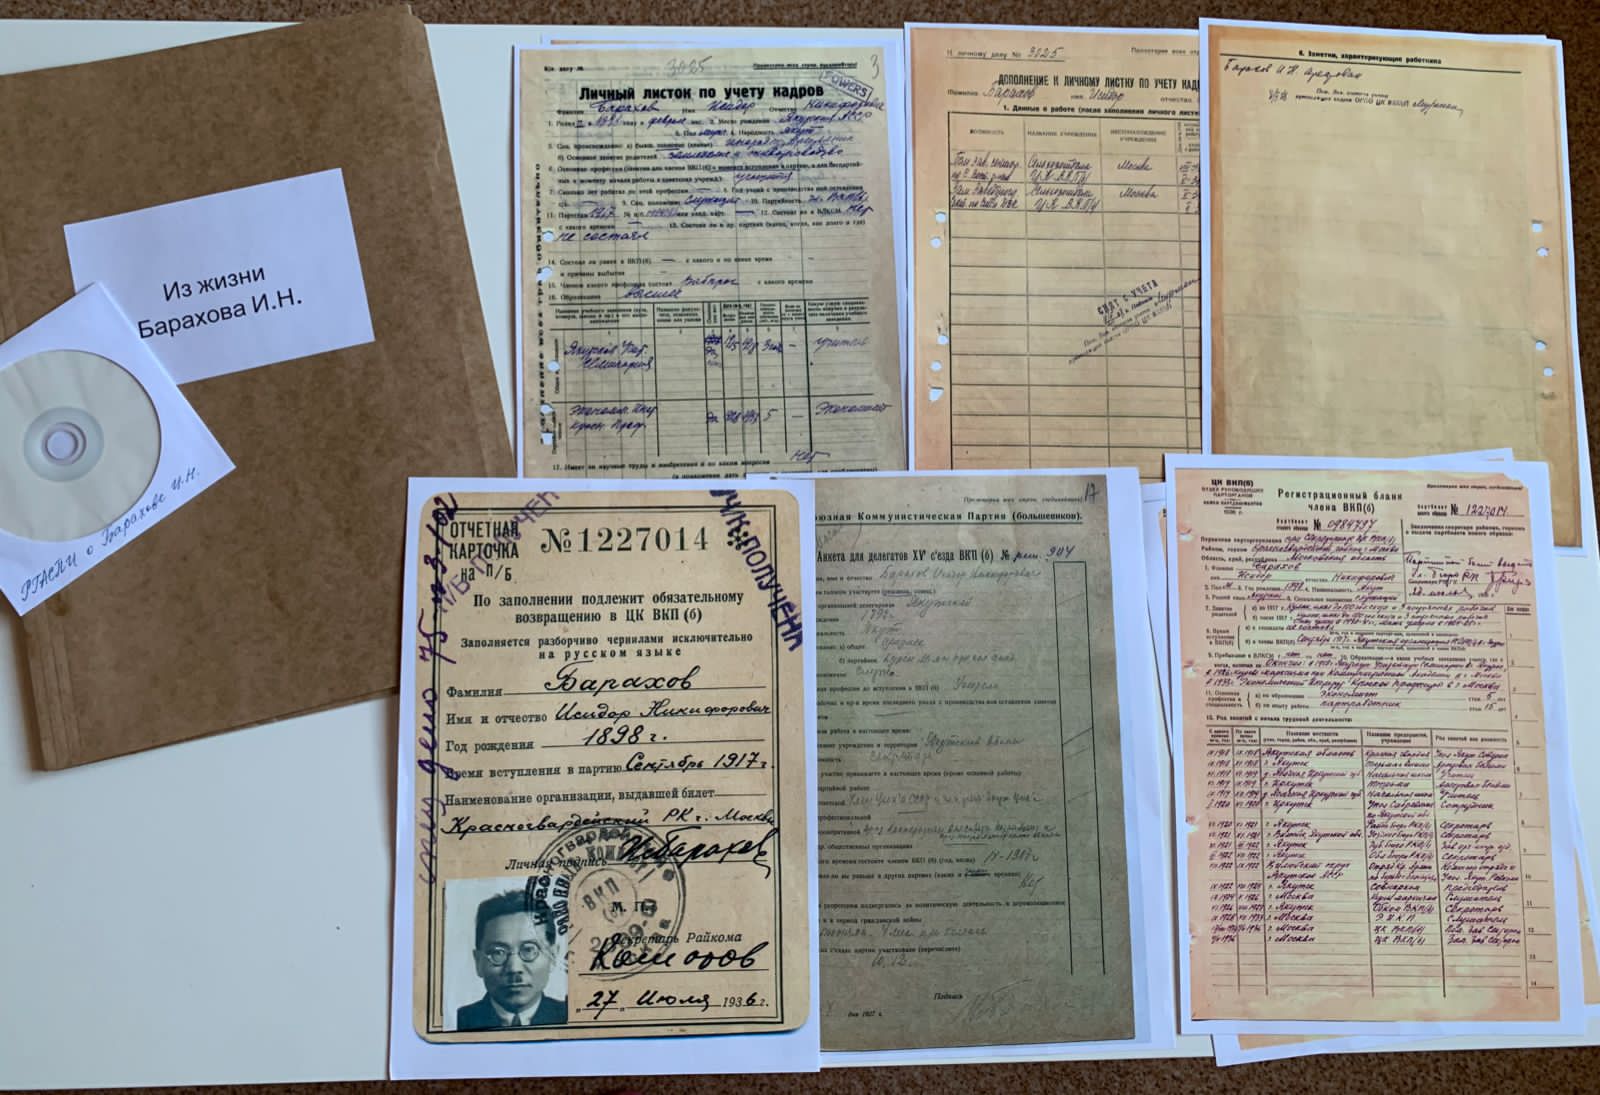 Документы Исидора Барахова передали в Музей государственности Якутии его имени